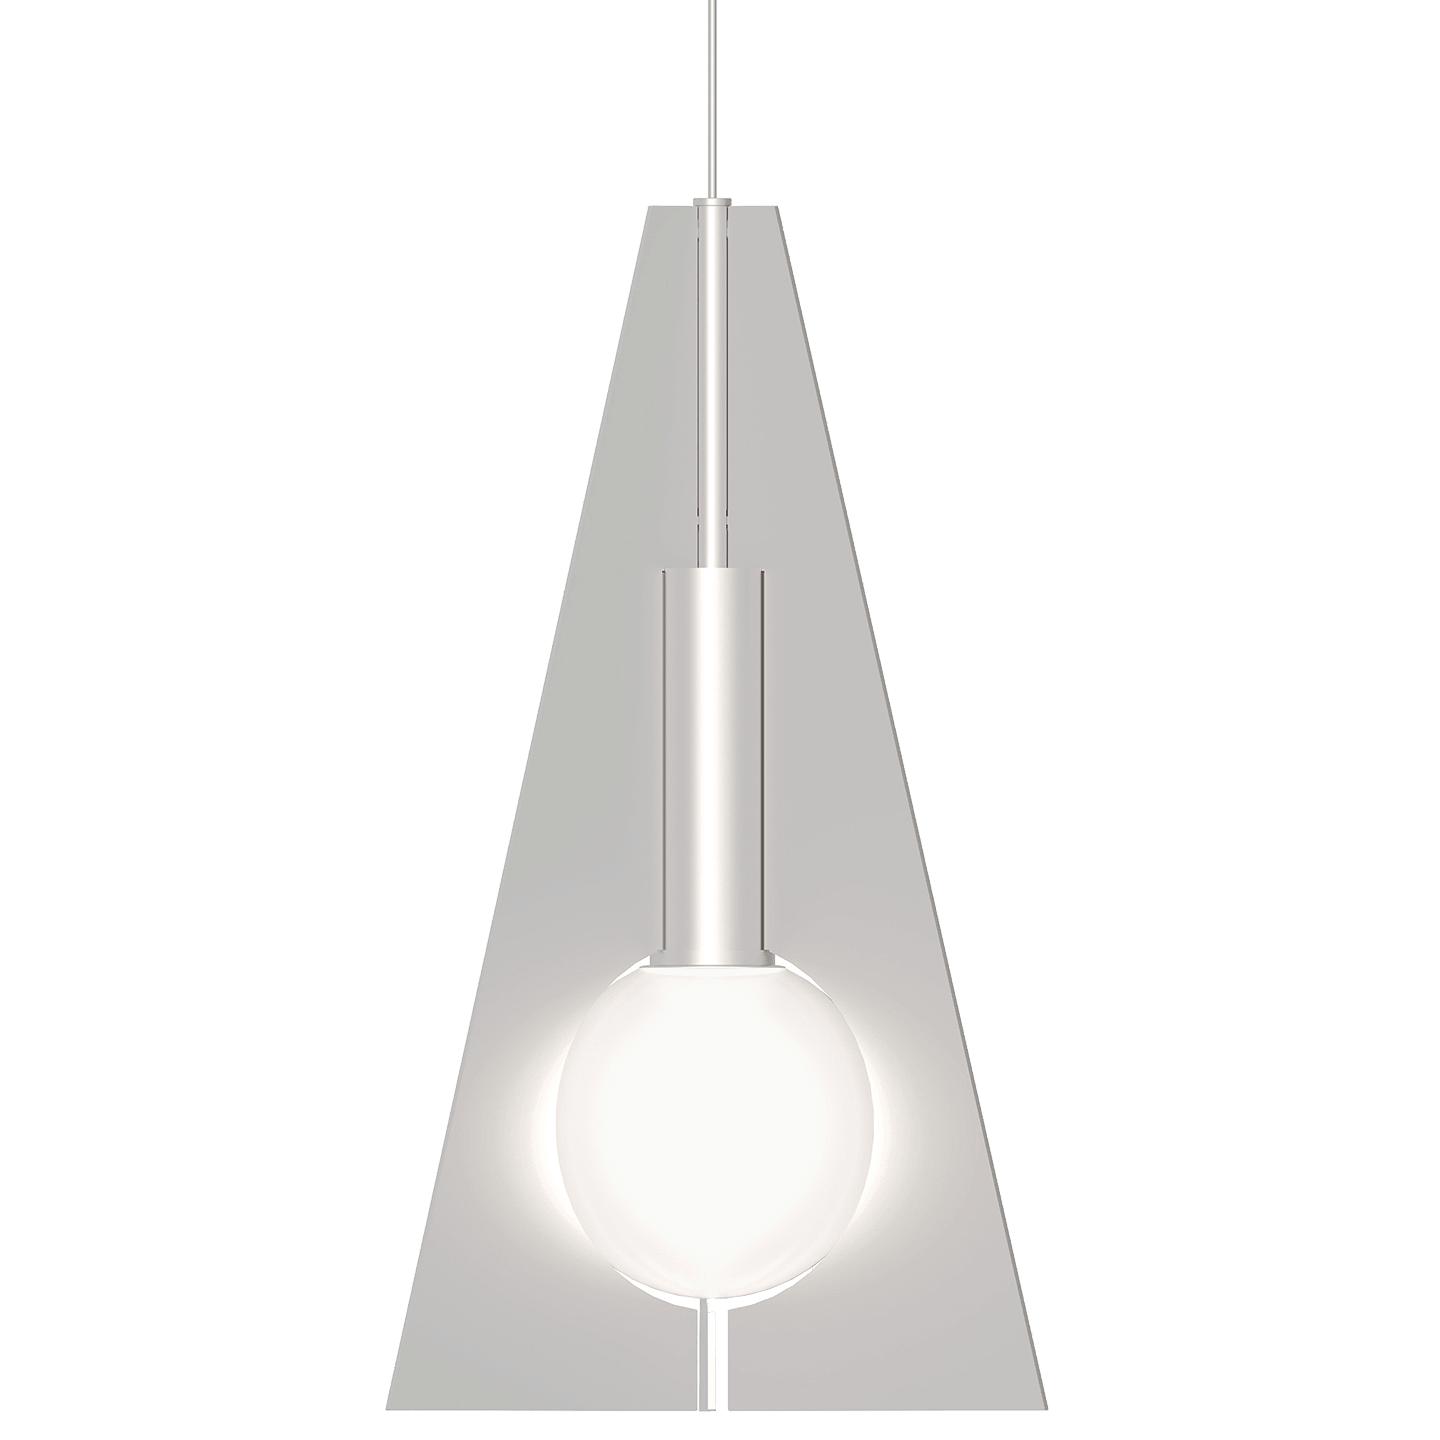 Купить Подвесной светильник Mini Orbel Pyramid Pendant в интернет-магазине roooms.ru